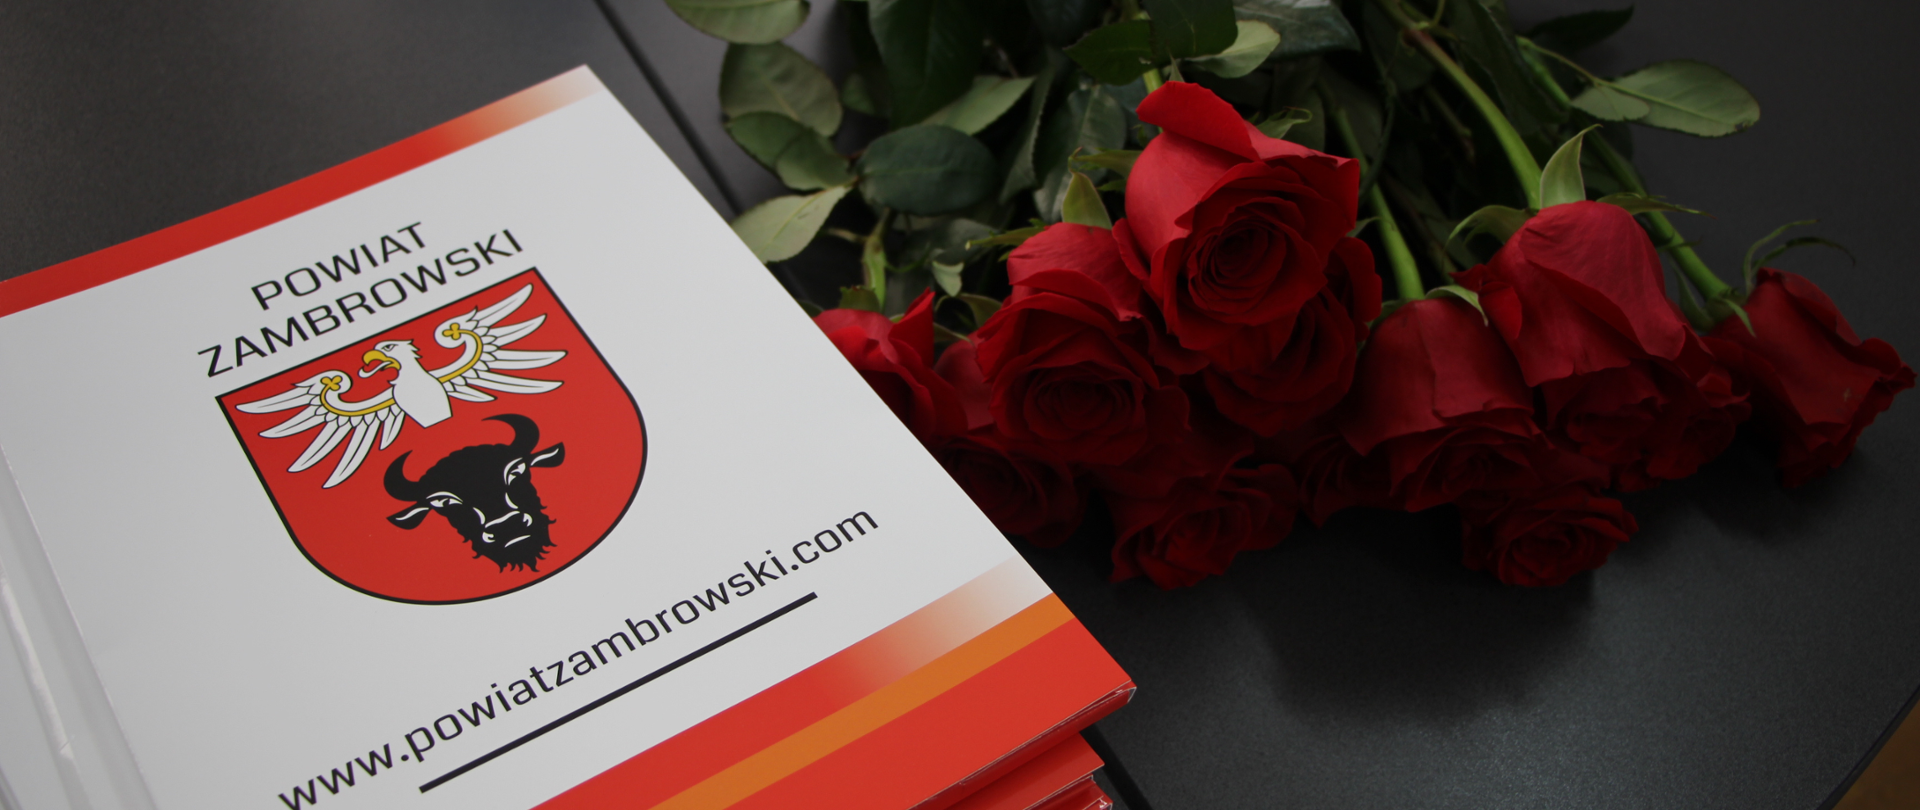 zdjęcia teczek z logo powiatu, a obok czerwone róże